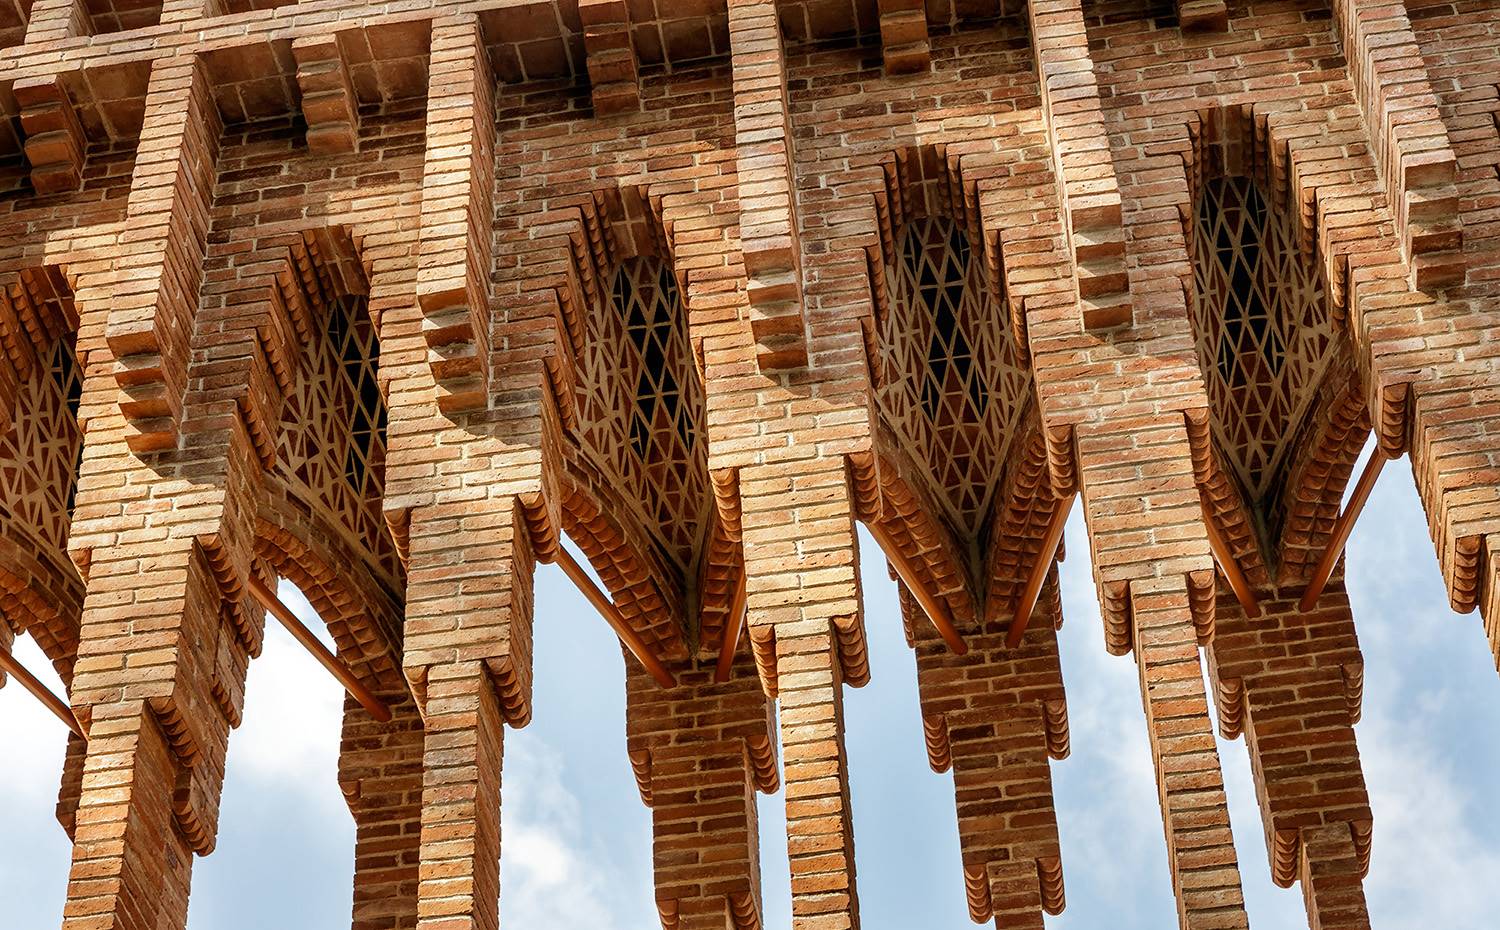 La cascada es una de las denominadas obras de "Gaudí invisible", porque a pesar de haber sido derribada se ha podido reconstruir gracias a las posibilidades de la informática.